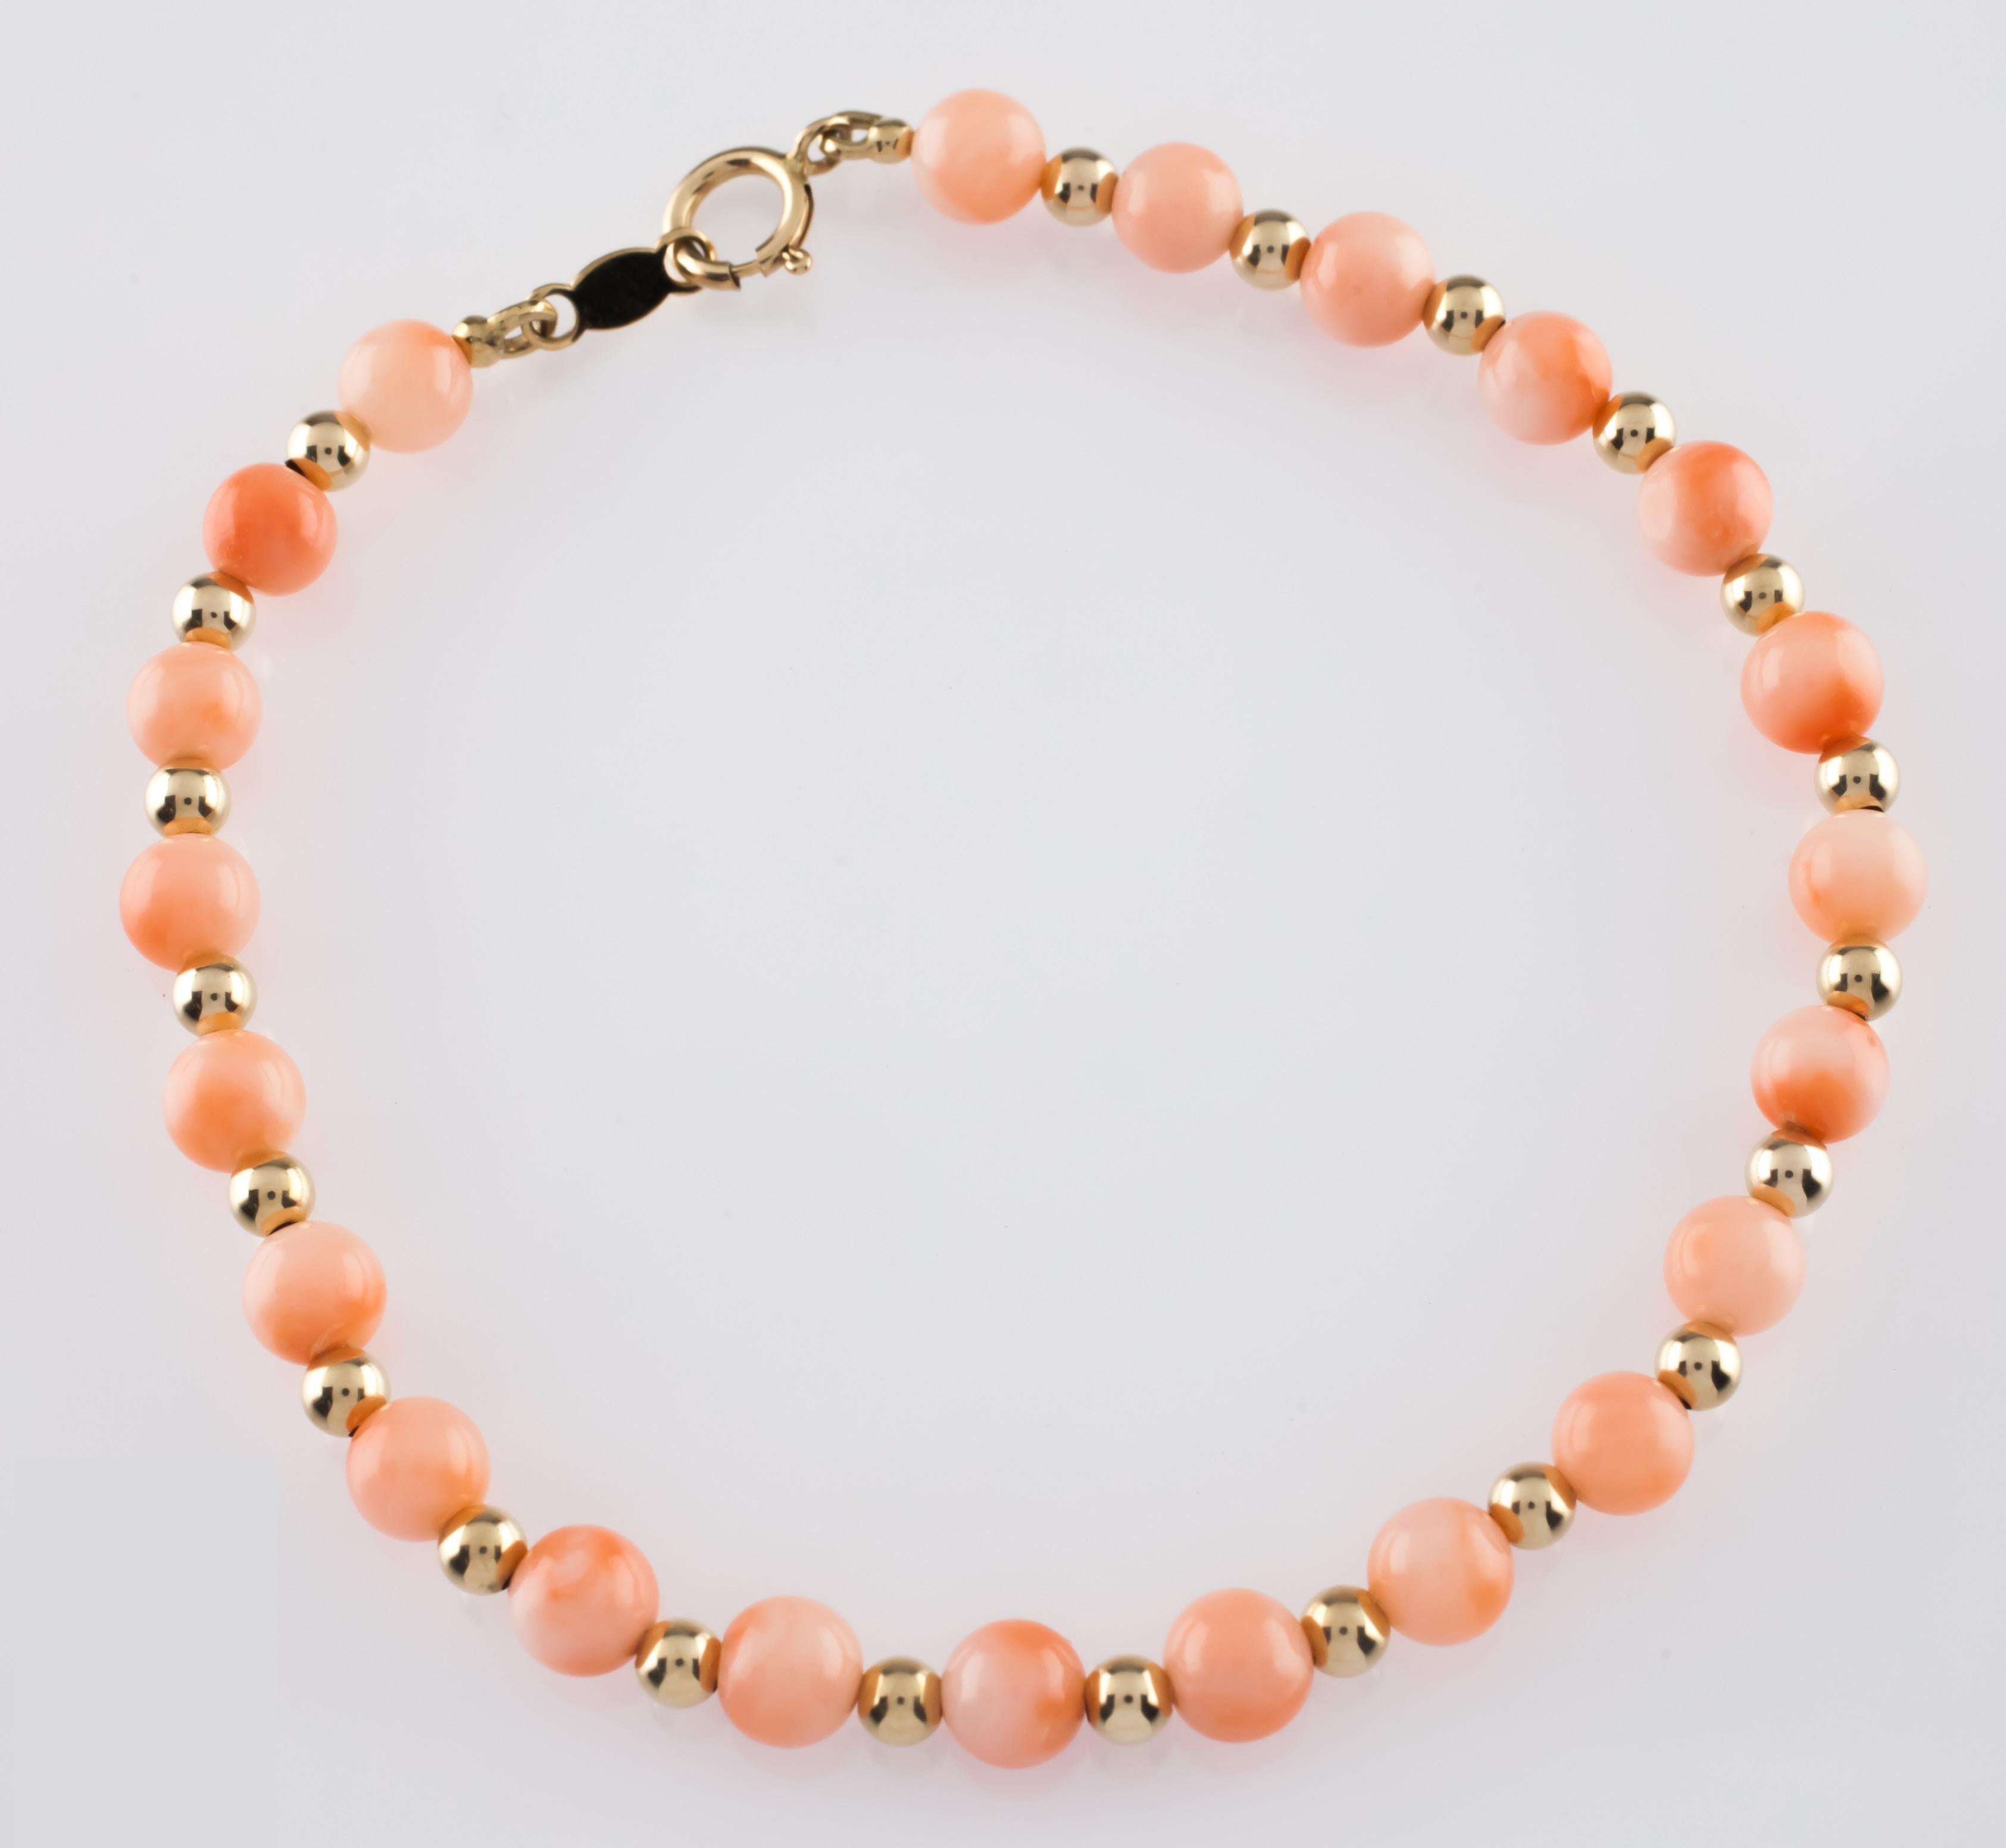 Magnifique bracelet en perles de corail
Comprend des perles de corail rondes (d'environ 4 à 5 mm de diamètre) entrecoupées de petites perles dorées (d'environ 2 mm de diamètre).
Longueur totale = 6,75 pouces
Masse totale = 4,0 grammes
Excellent